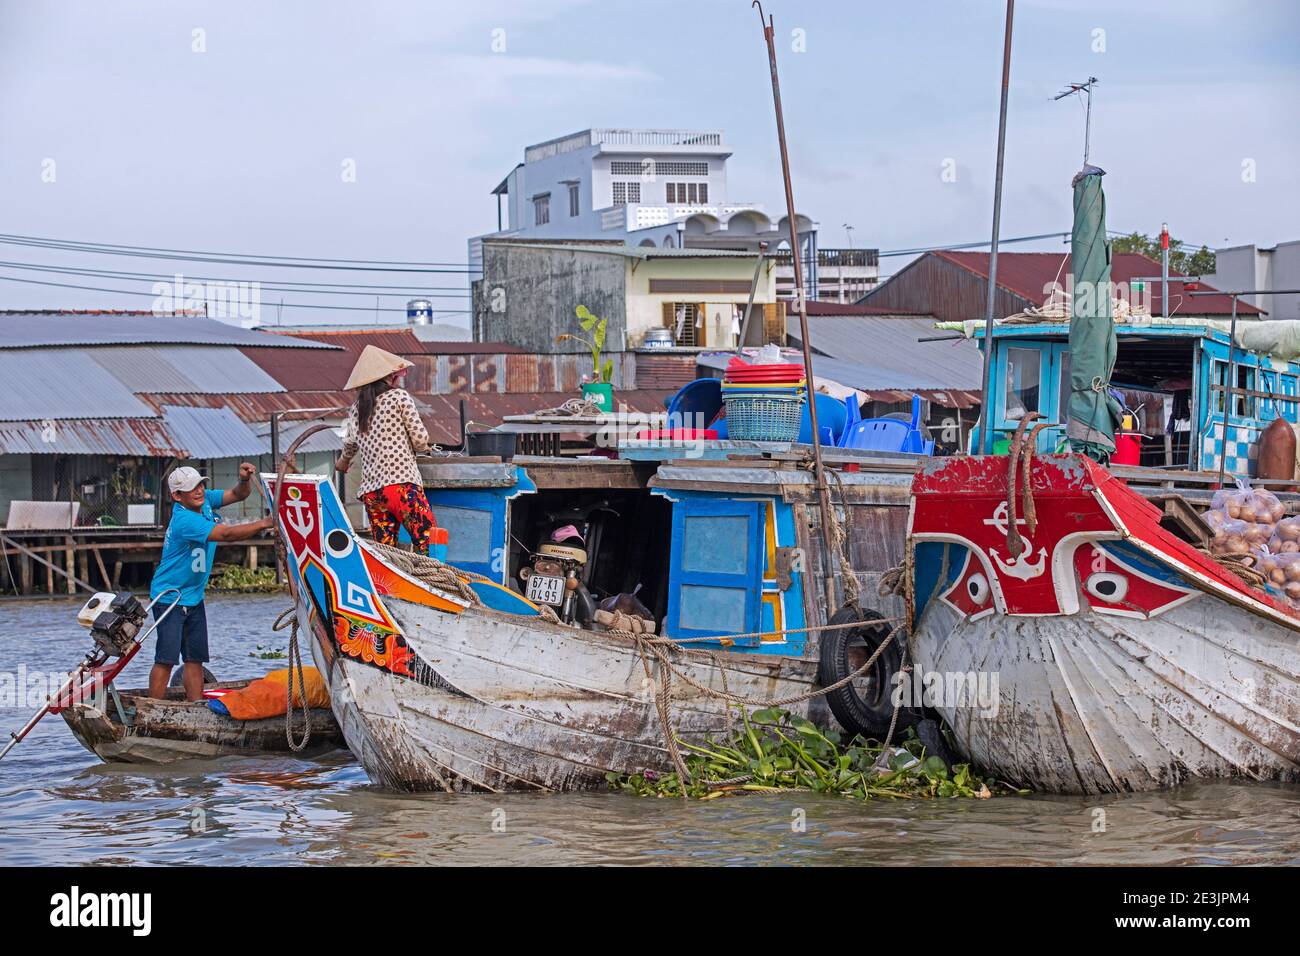 Le tradizionali barche in legno al mercato galleggiante della città Can Tho nel delta del Mekong, Vietnam Foto Stock